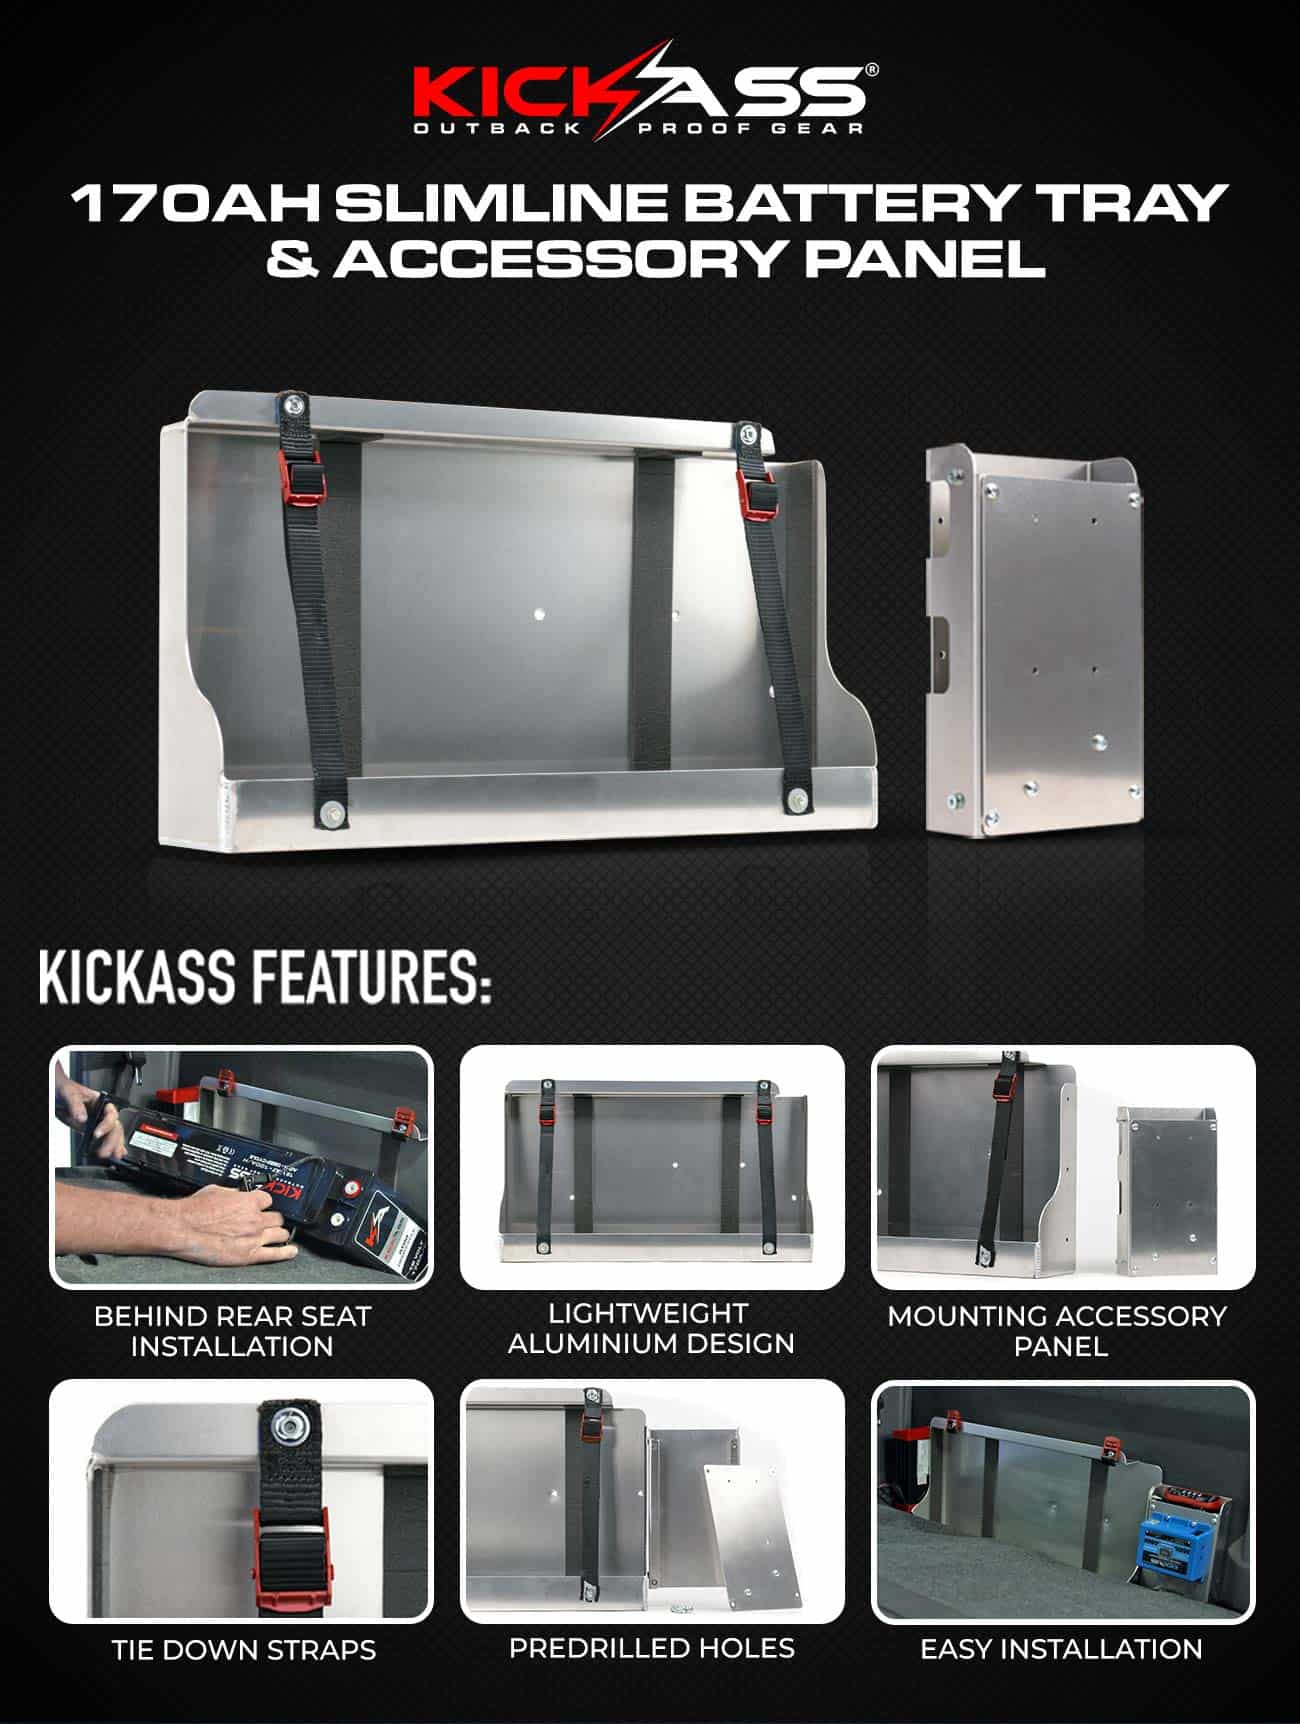 KICKASS 170Ah Slimline Battery Tray & Accessory Panel